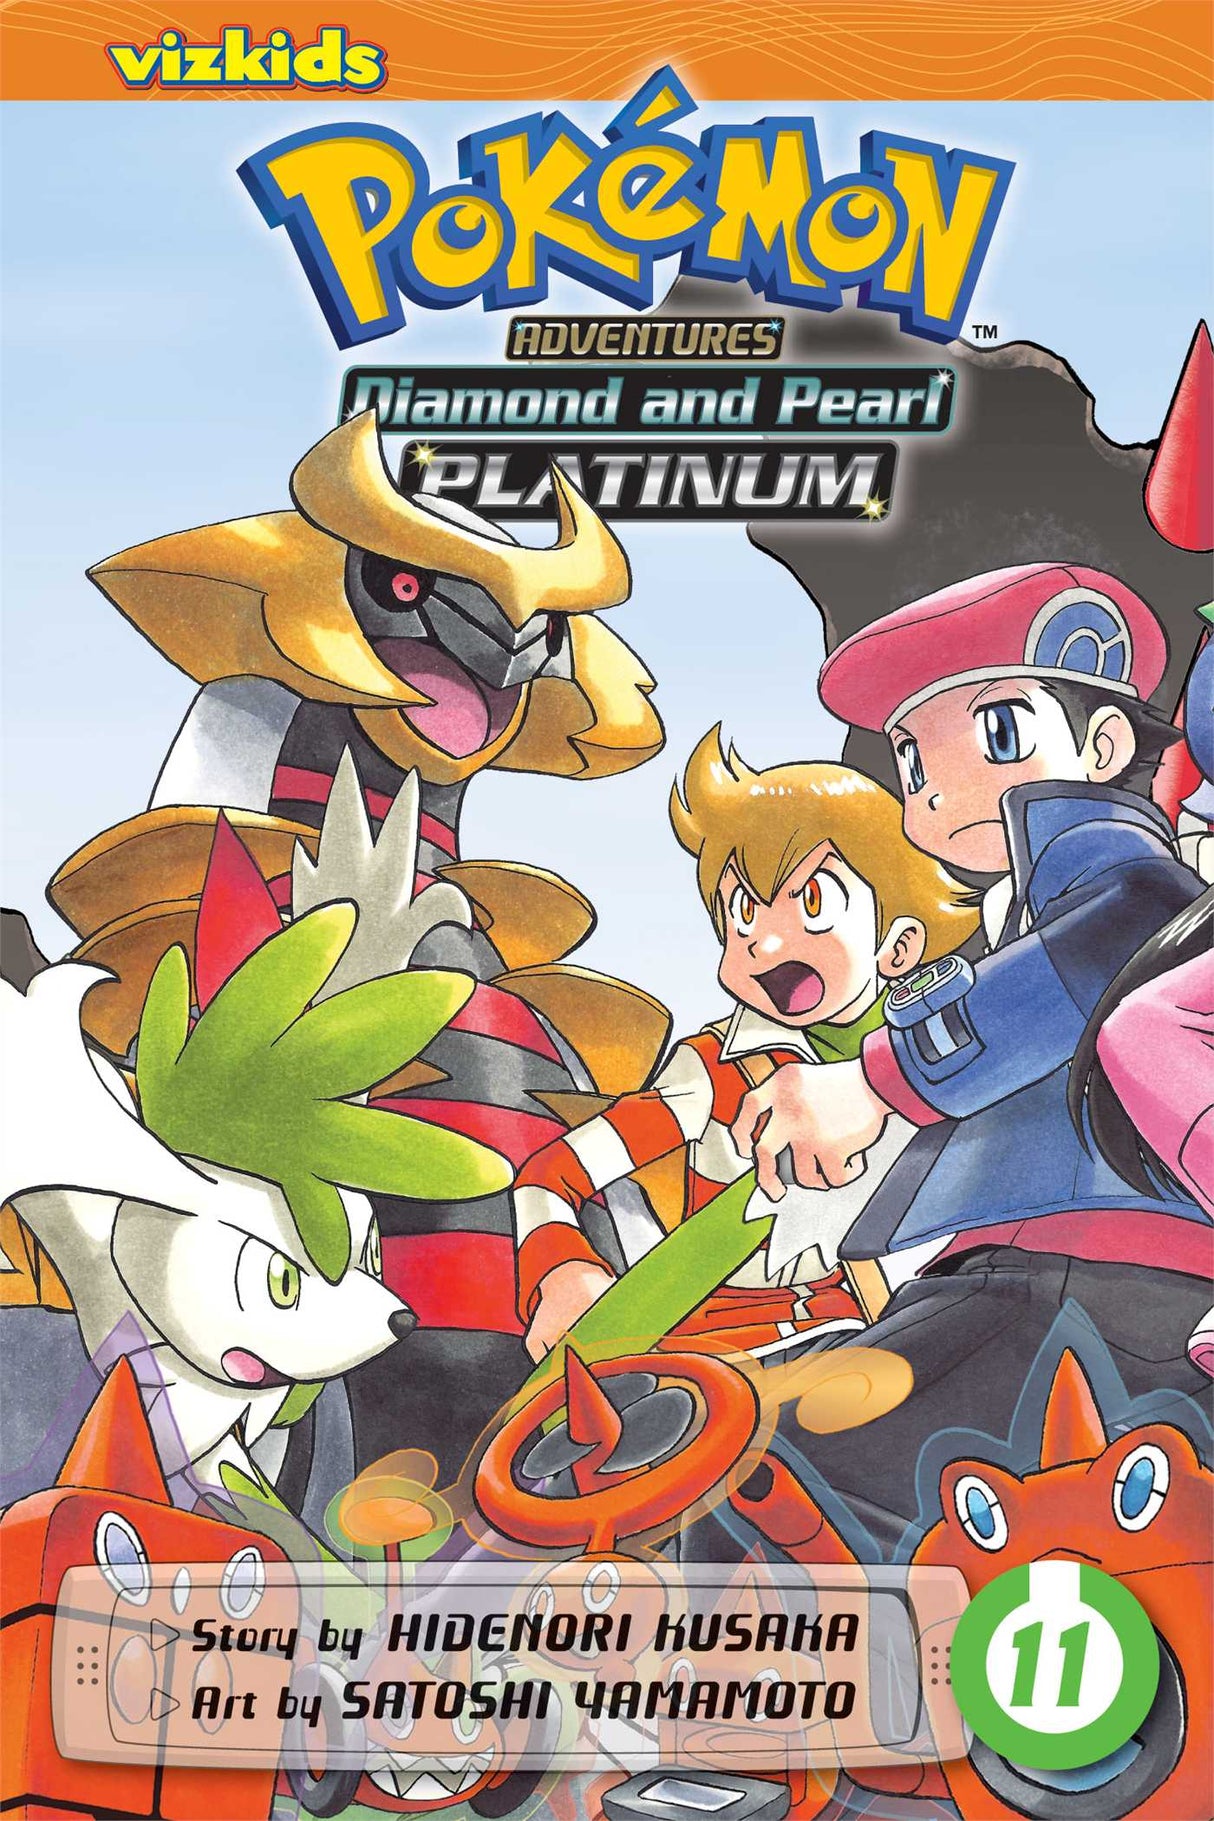 Cover image of the Manga Pokémon-Adventures-Diamond-and-PearlPlatinum-Vol-11-